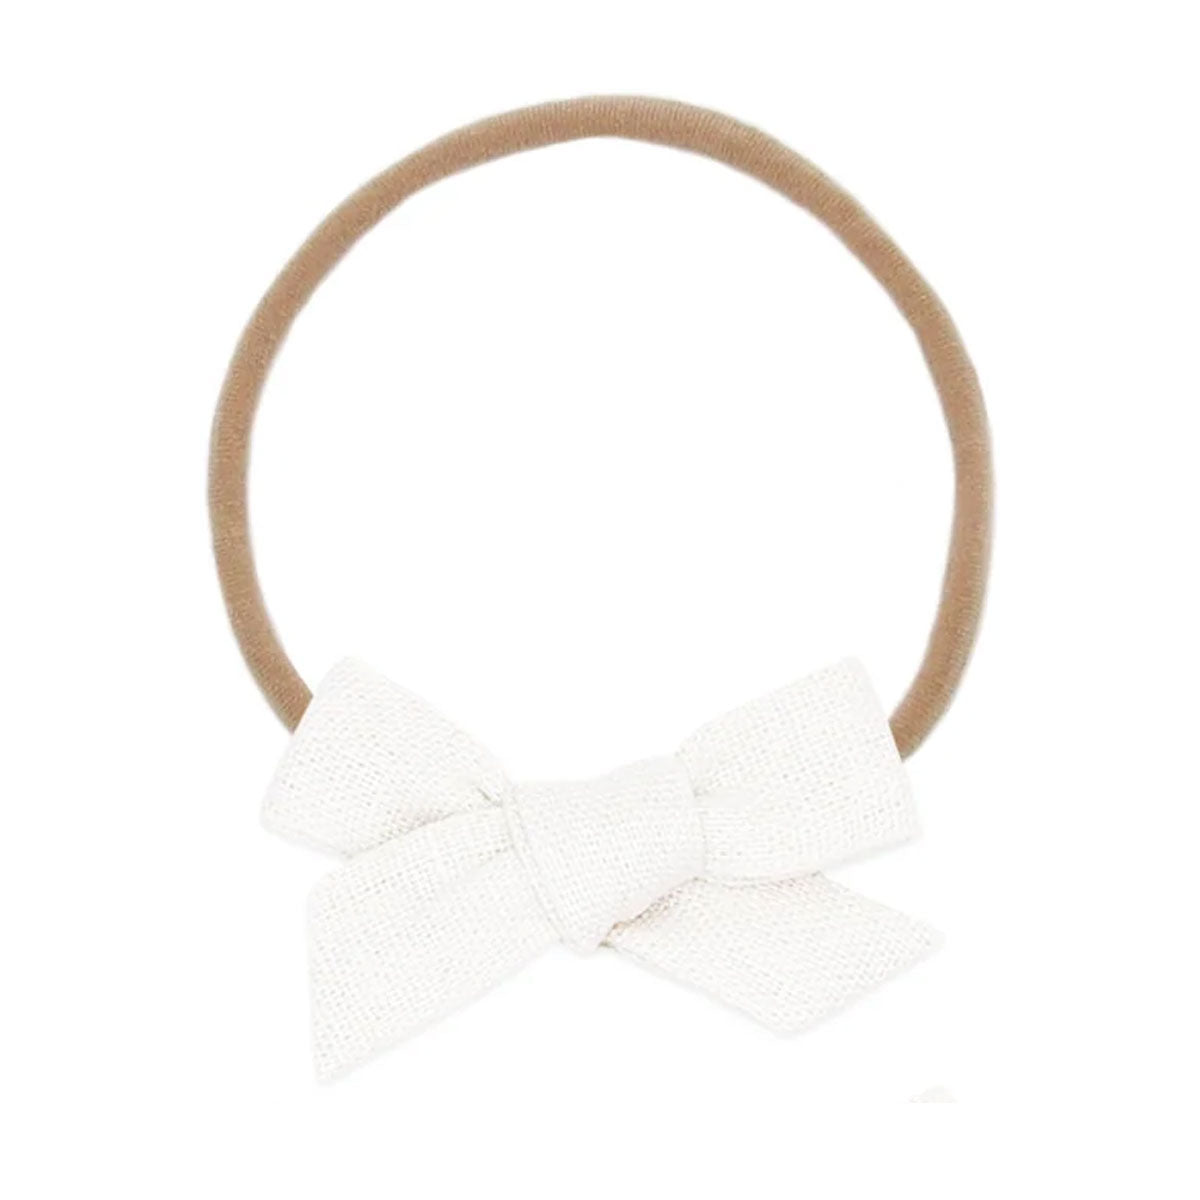 Lou Lou and Company Linen Bow Headband - Small - White